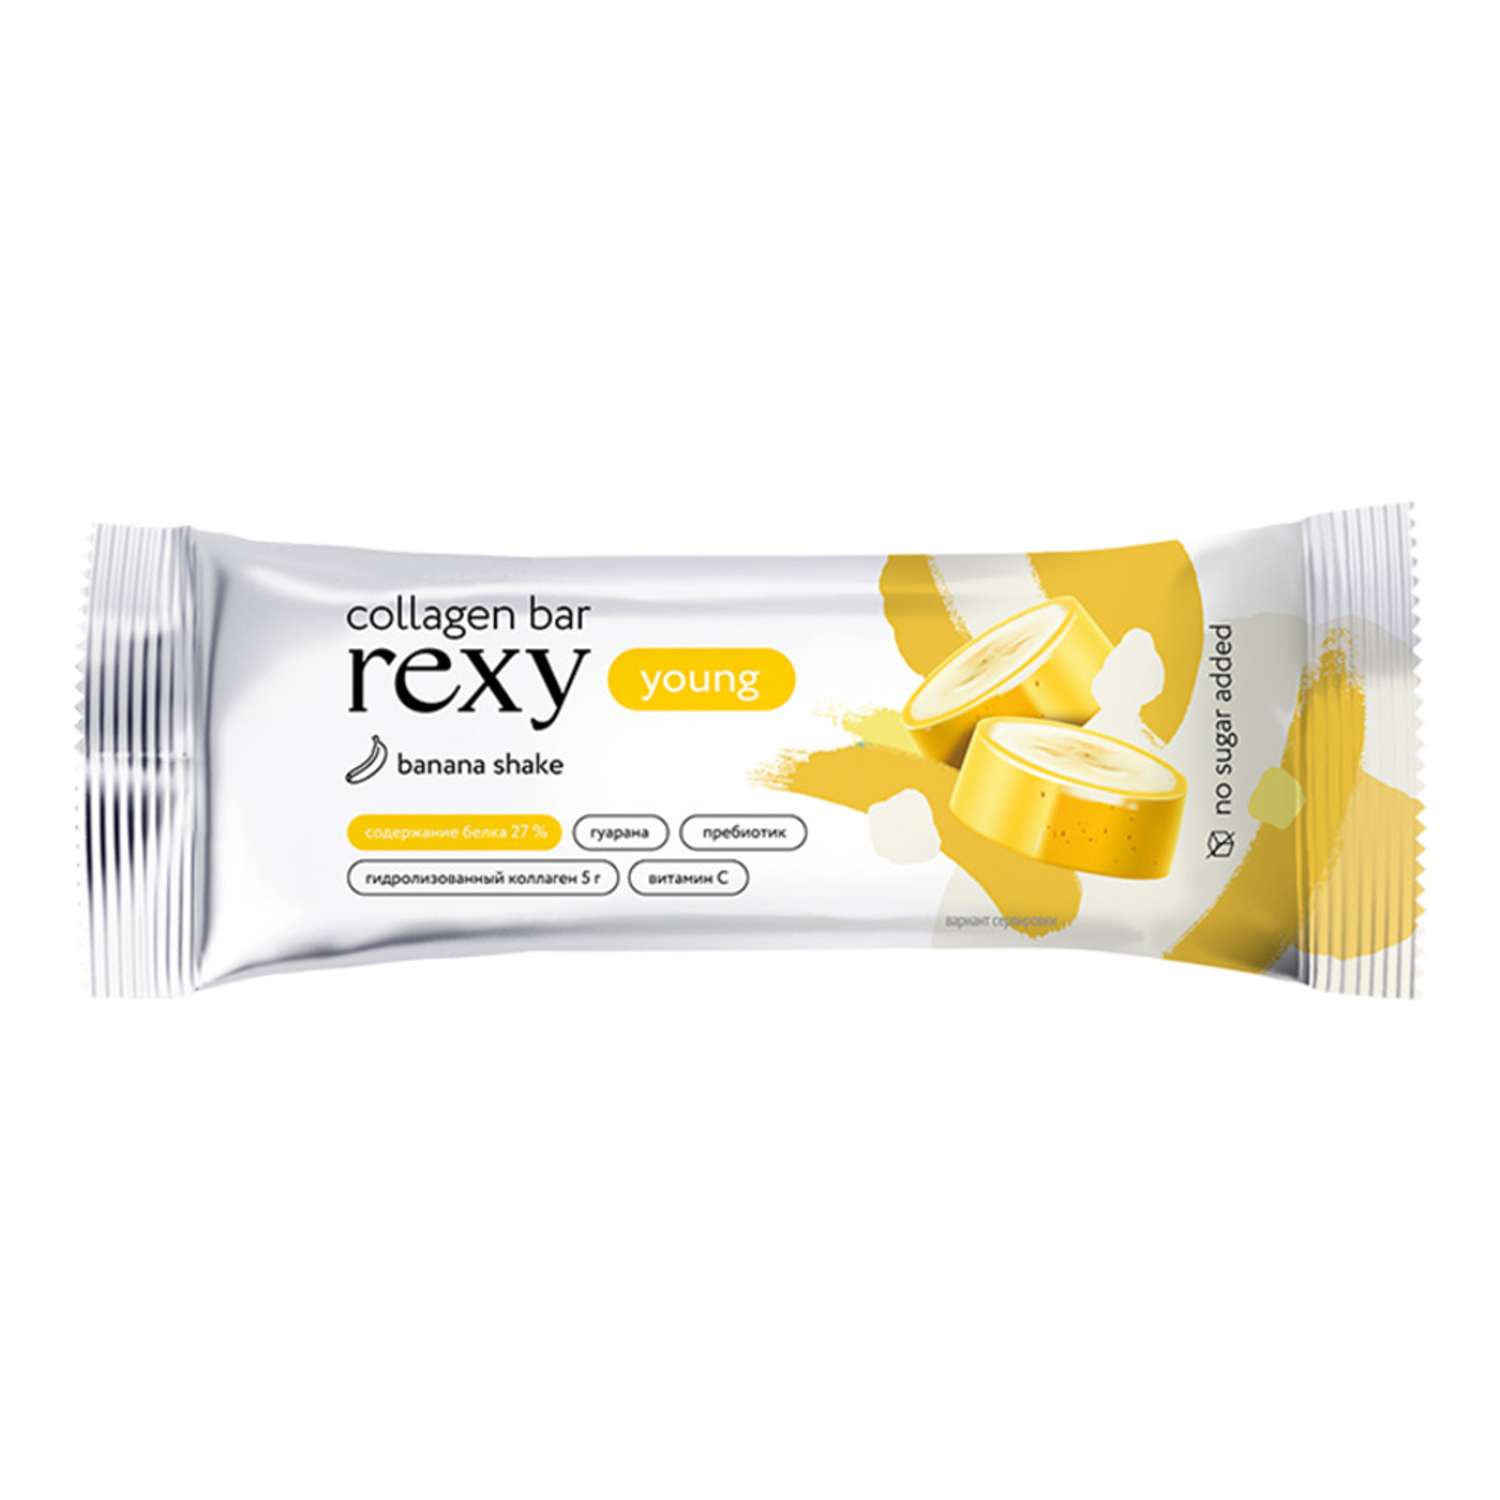 Протеиновые батончики ProteinRex rexy YOUNG с коллагеном банановый шейк 18шт - фото 2